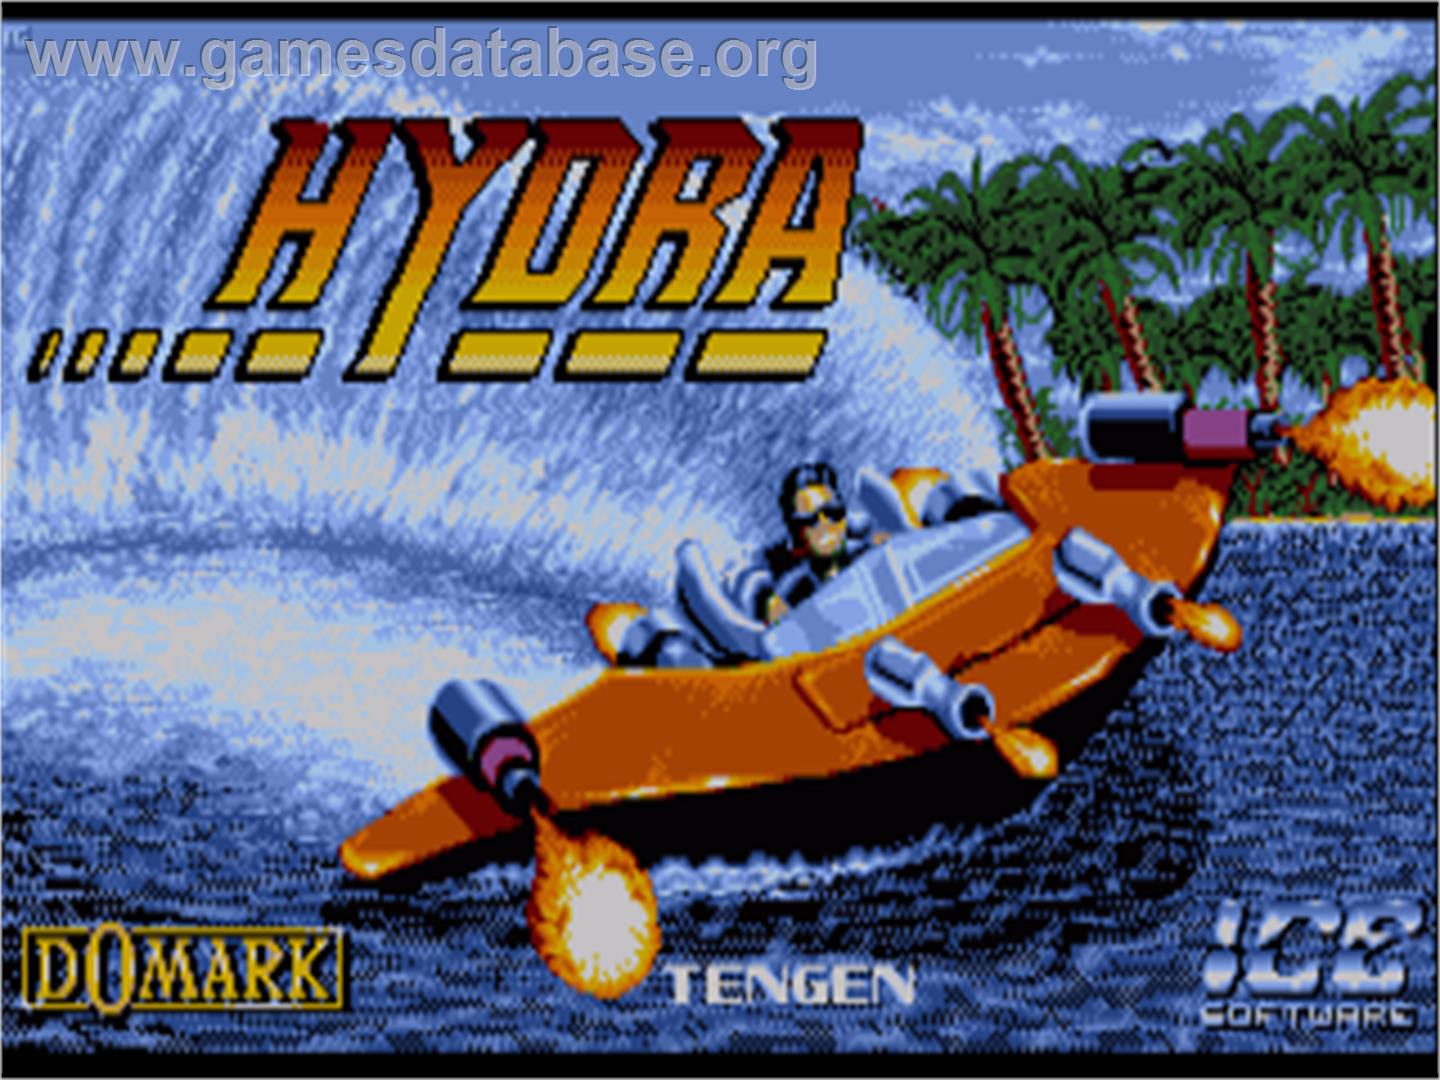 Hydra - Commodore Amiga - Artwork - Title Screen